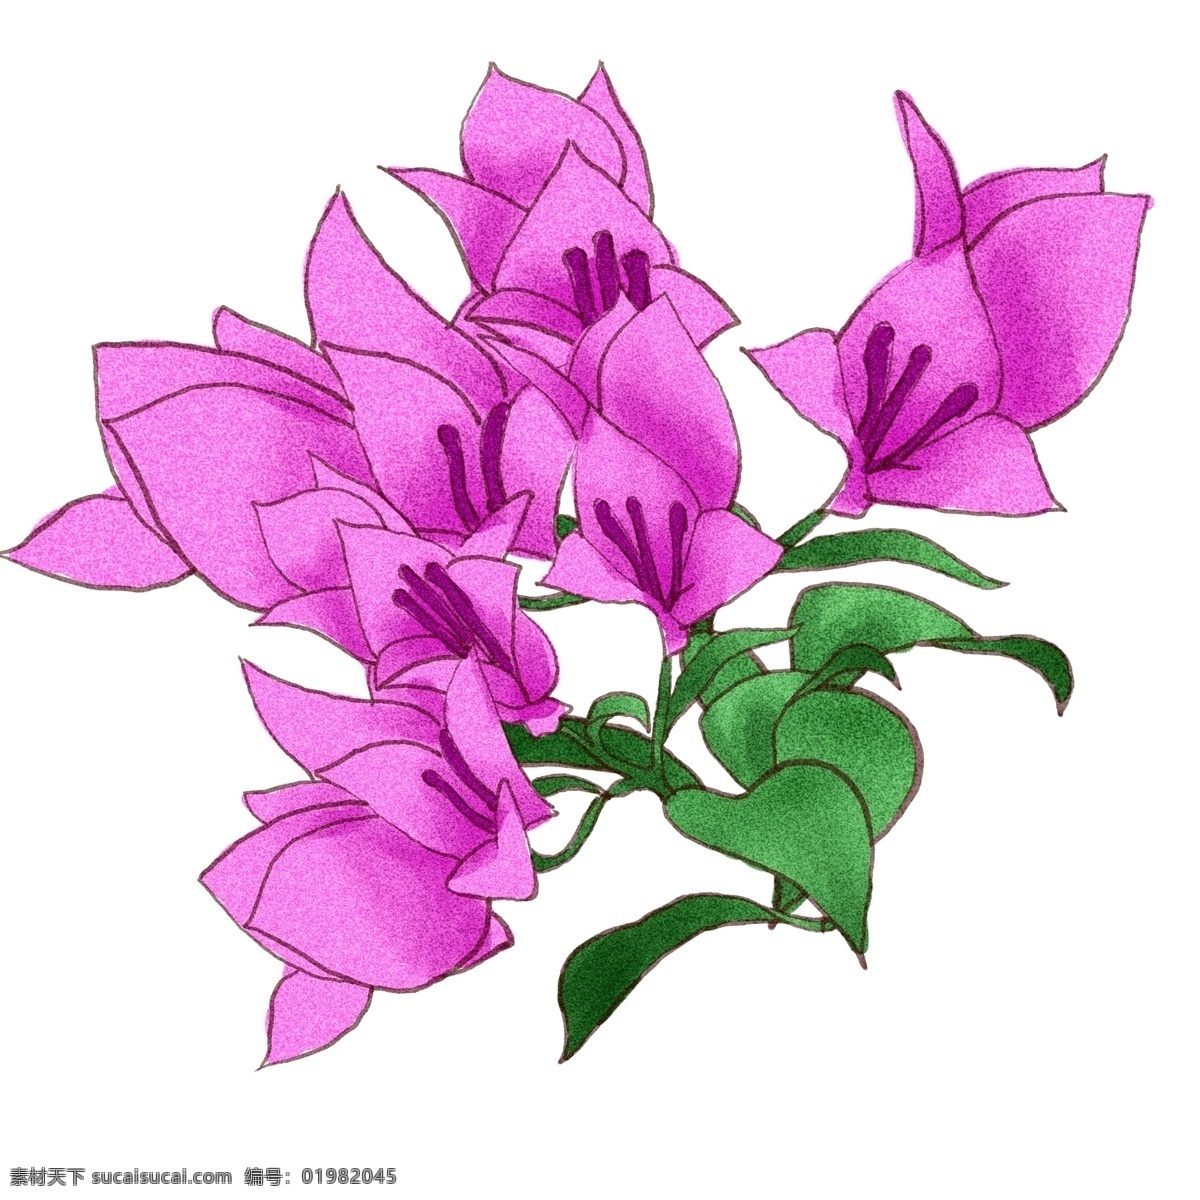 七夕 情人节 鲜花 原创 商用 元素 花朵 可爱 唯美 浪漫 爱情 手绘 板绘 水彩